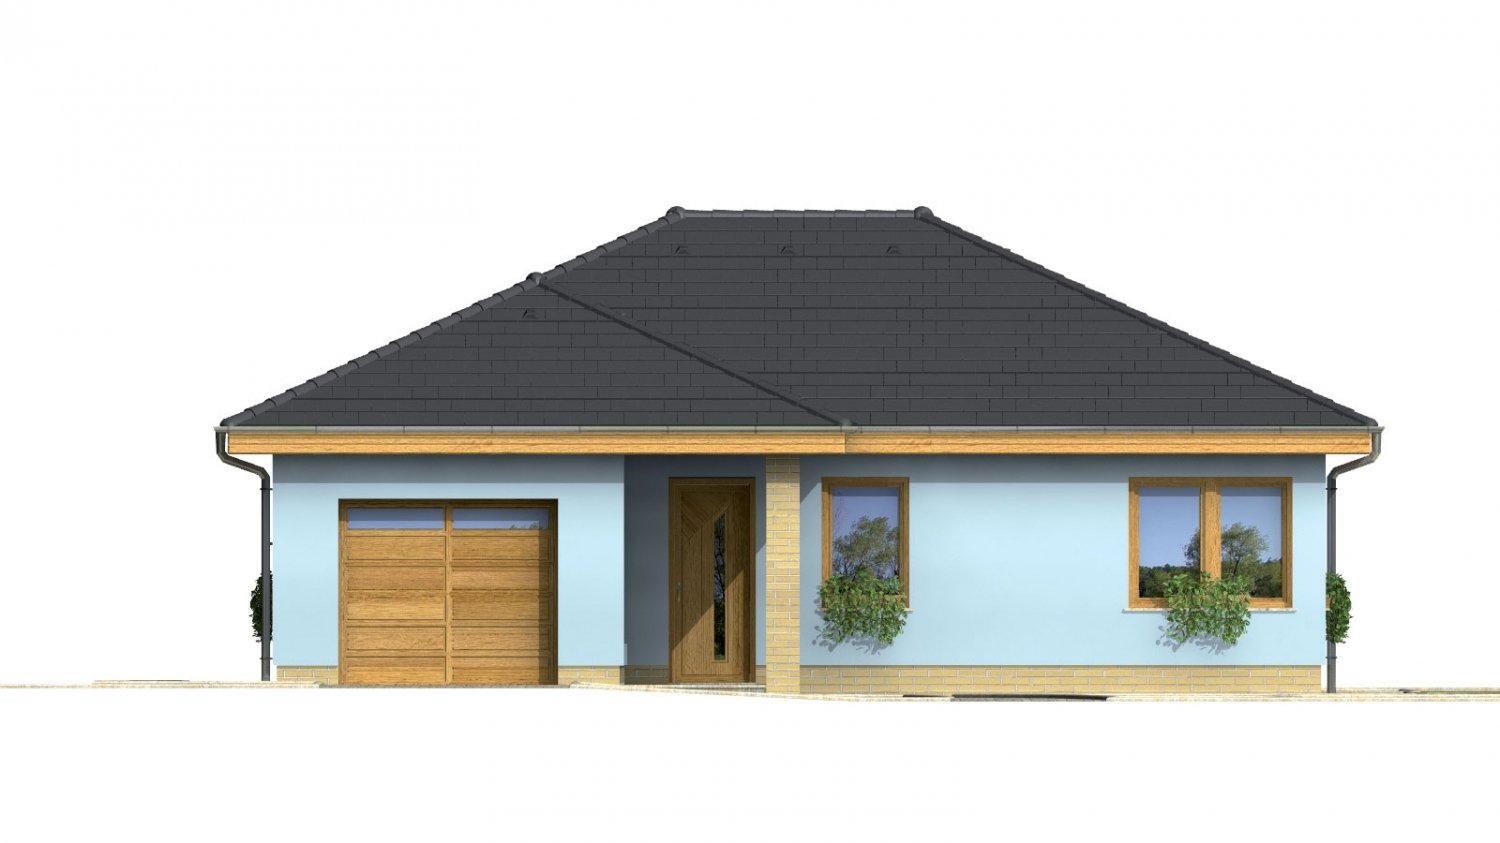 Zrkadlový pohľad 1. - Projekt přízemního rodinného domu s garáží, valbovou střechou a terasou.